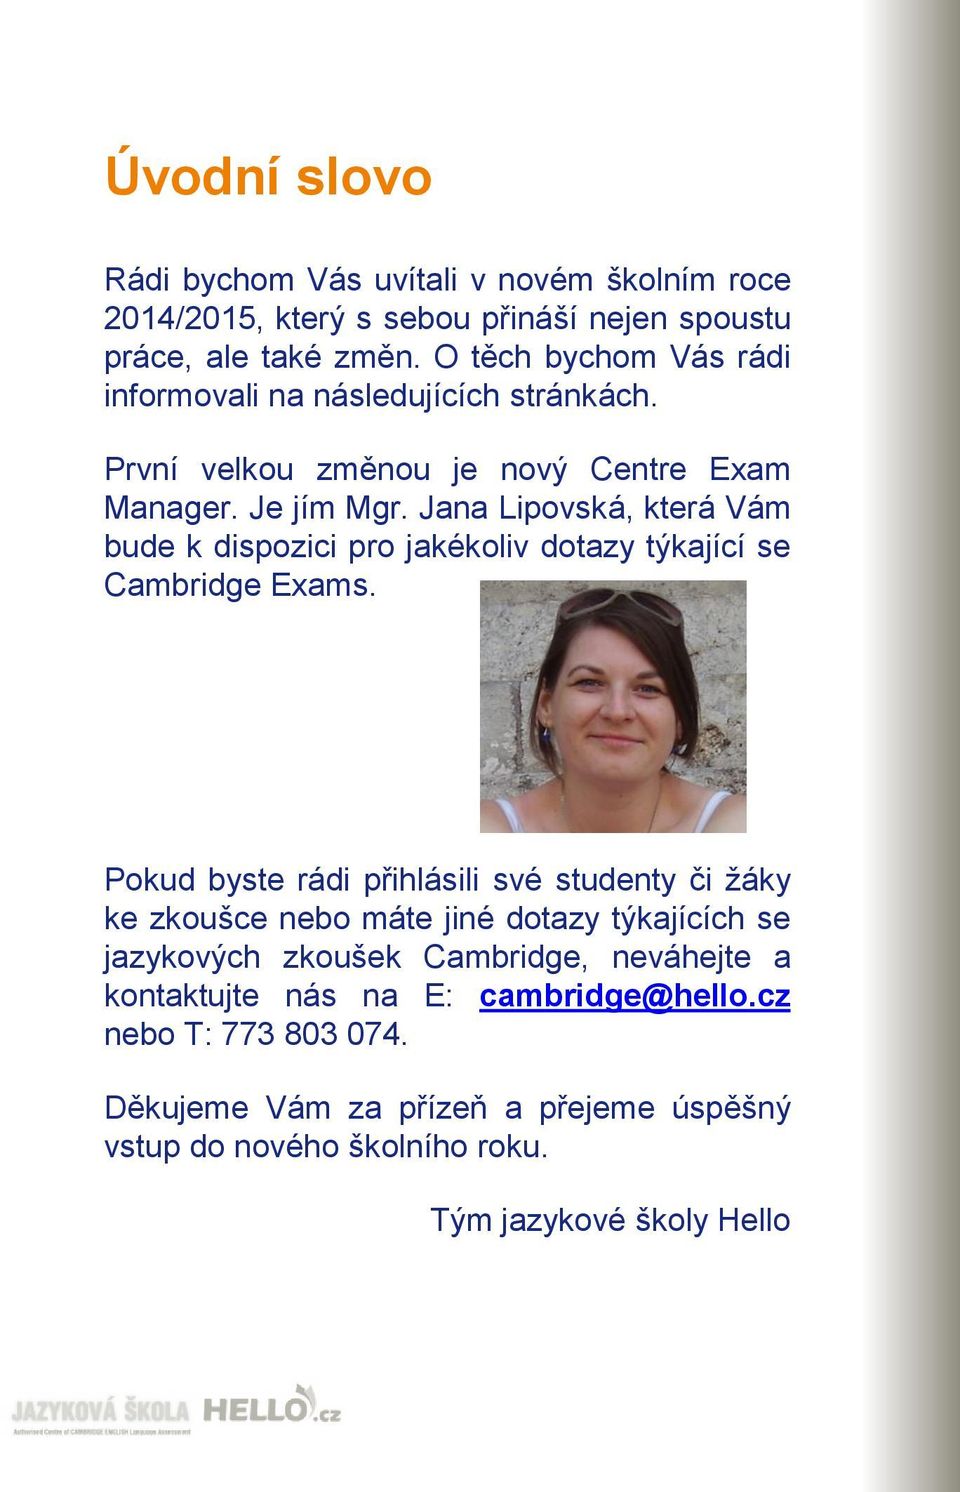 Jana Lipovská, která Vám bude k dispozici pro jakékoliv dotazy týkající se Cambridge Exams.